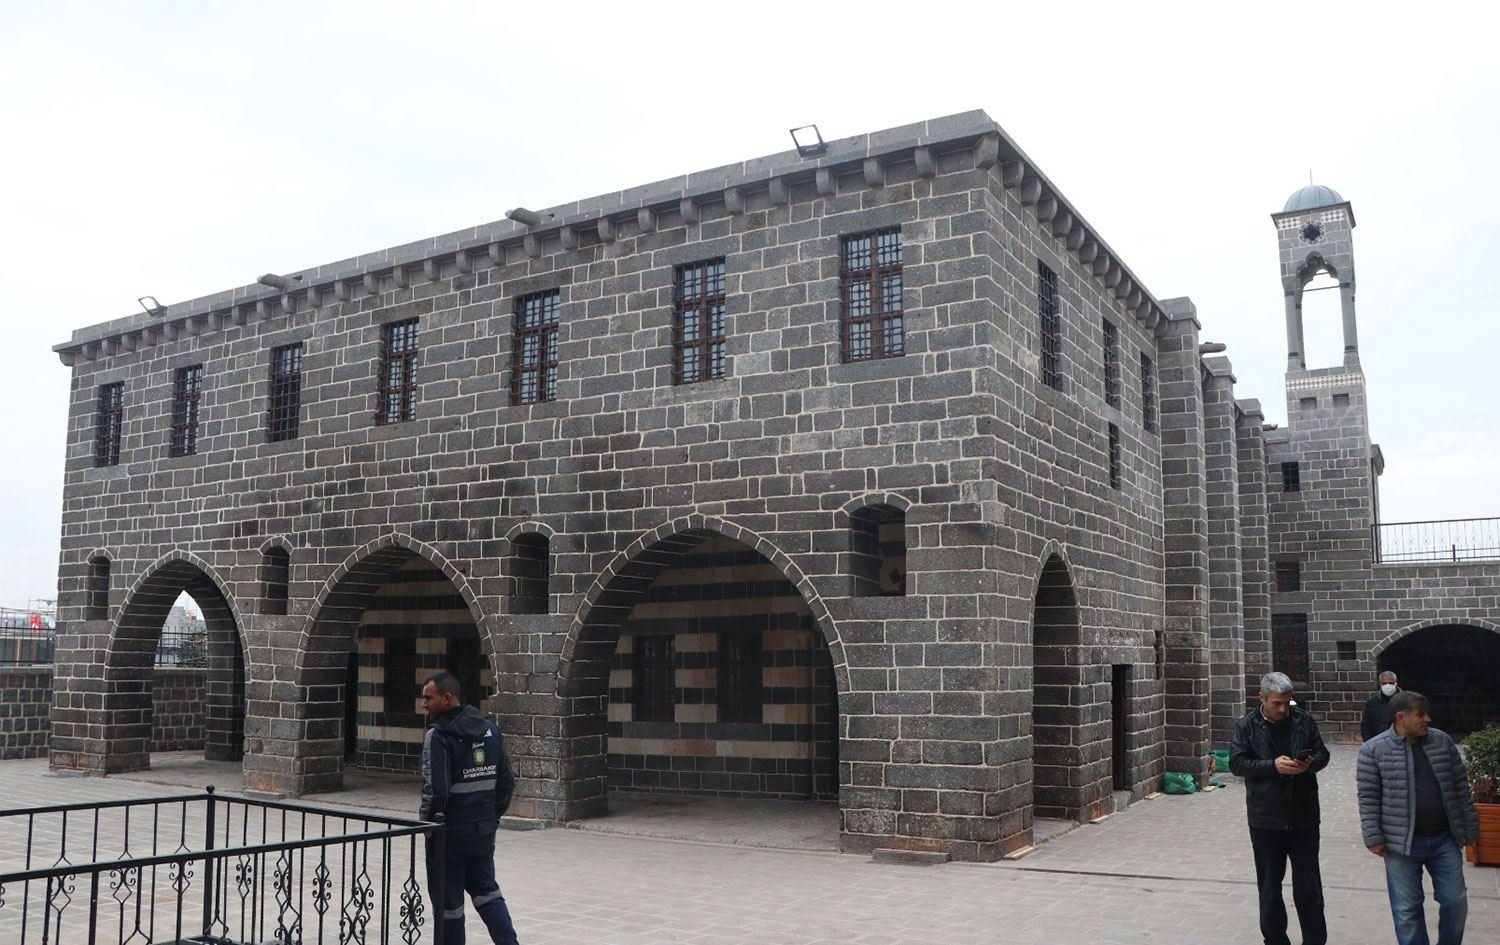 Դիարբեքիրի կաթոլիկ հայկական եկեղեցին վերանորոգումից հետո հանձնել են տեղի համալսարանի տնօրինությանը